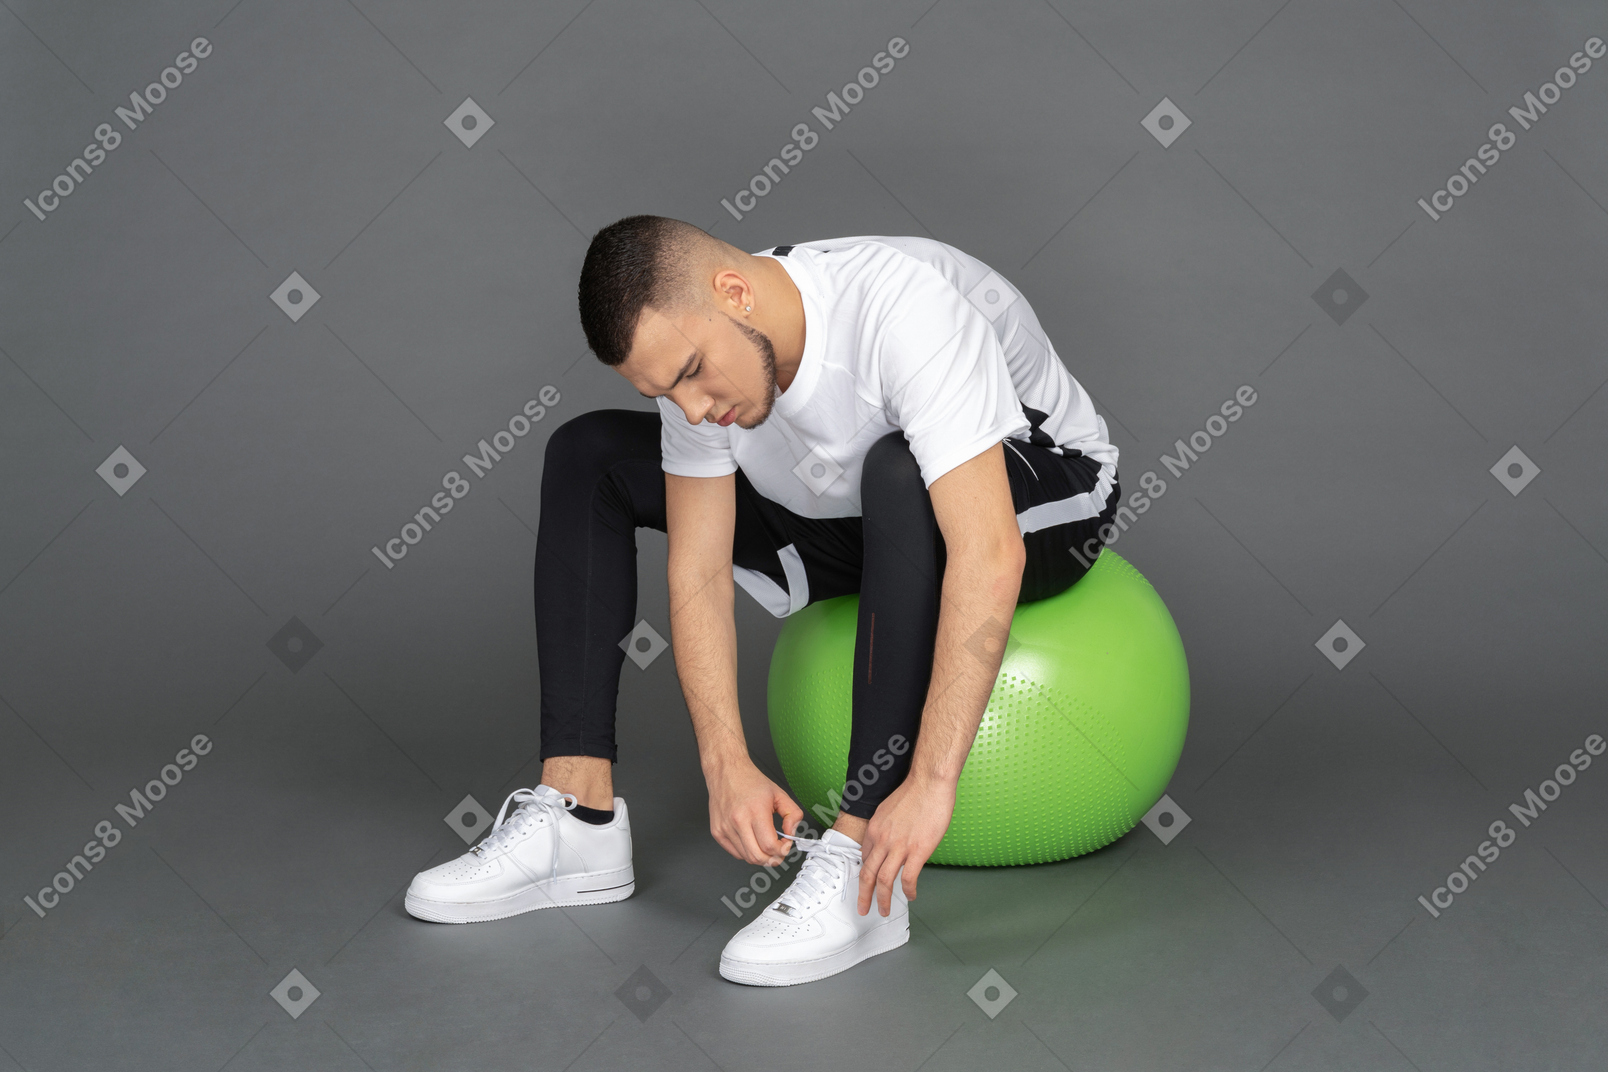 Hombre sentado en una fitball